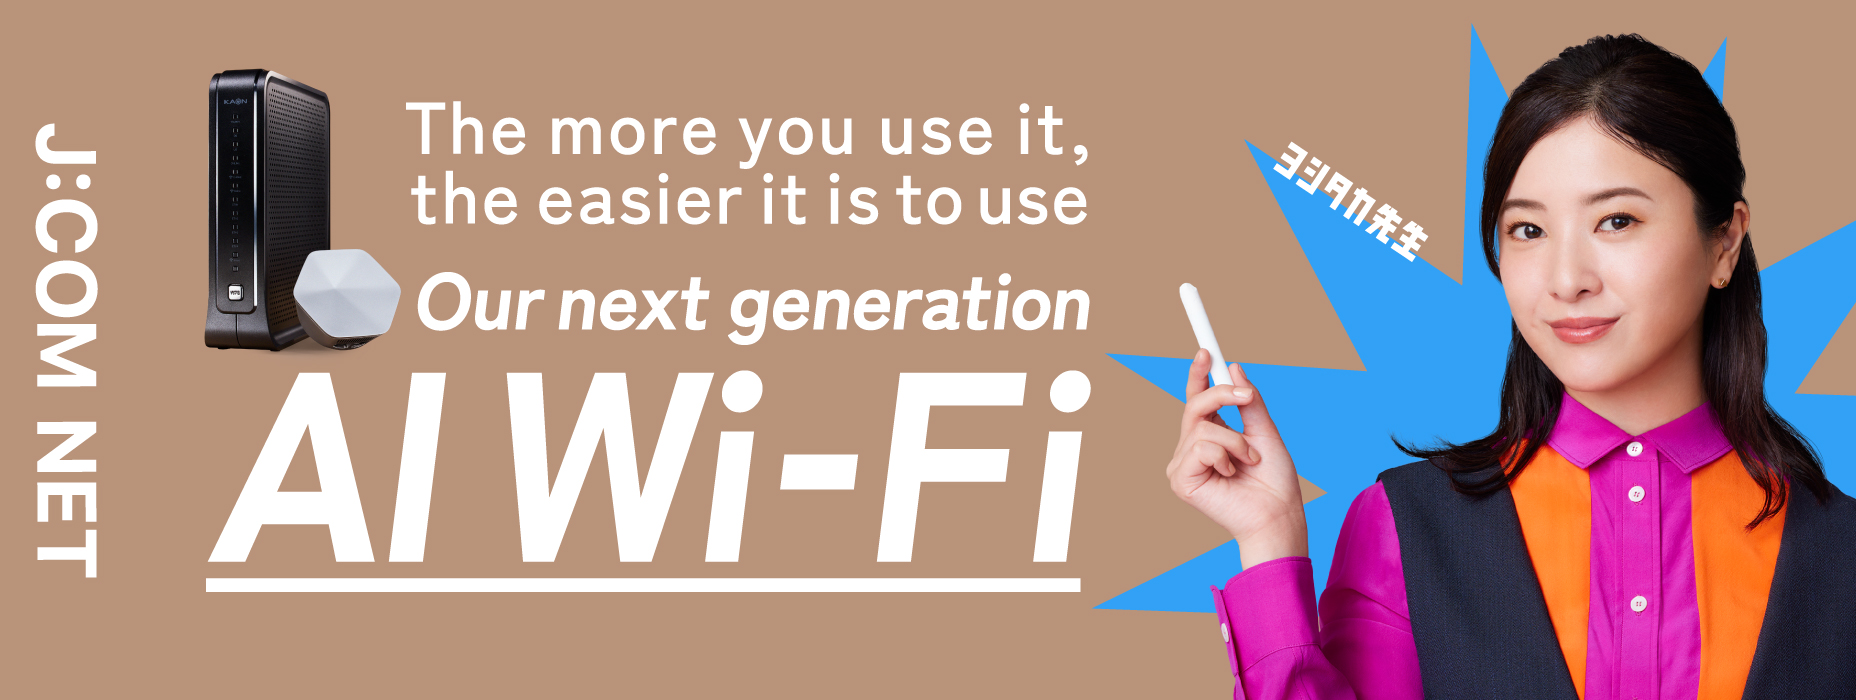 Wi-Fi AI thế hệ tiếp theo sẽ thoải mái hơn khi bạn sử dụng nhiều hơn